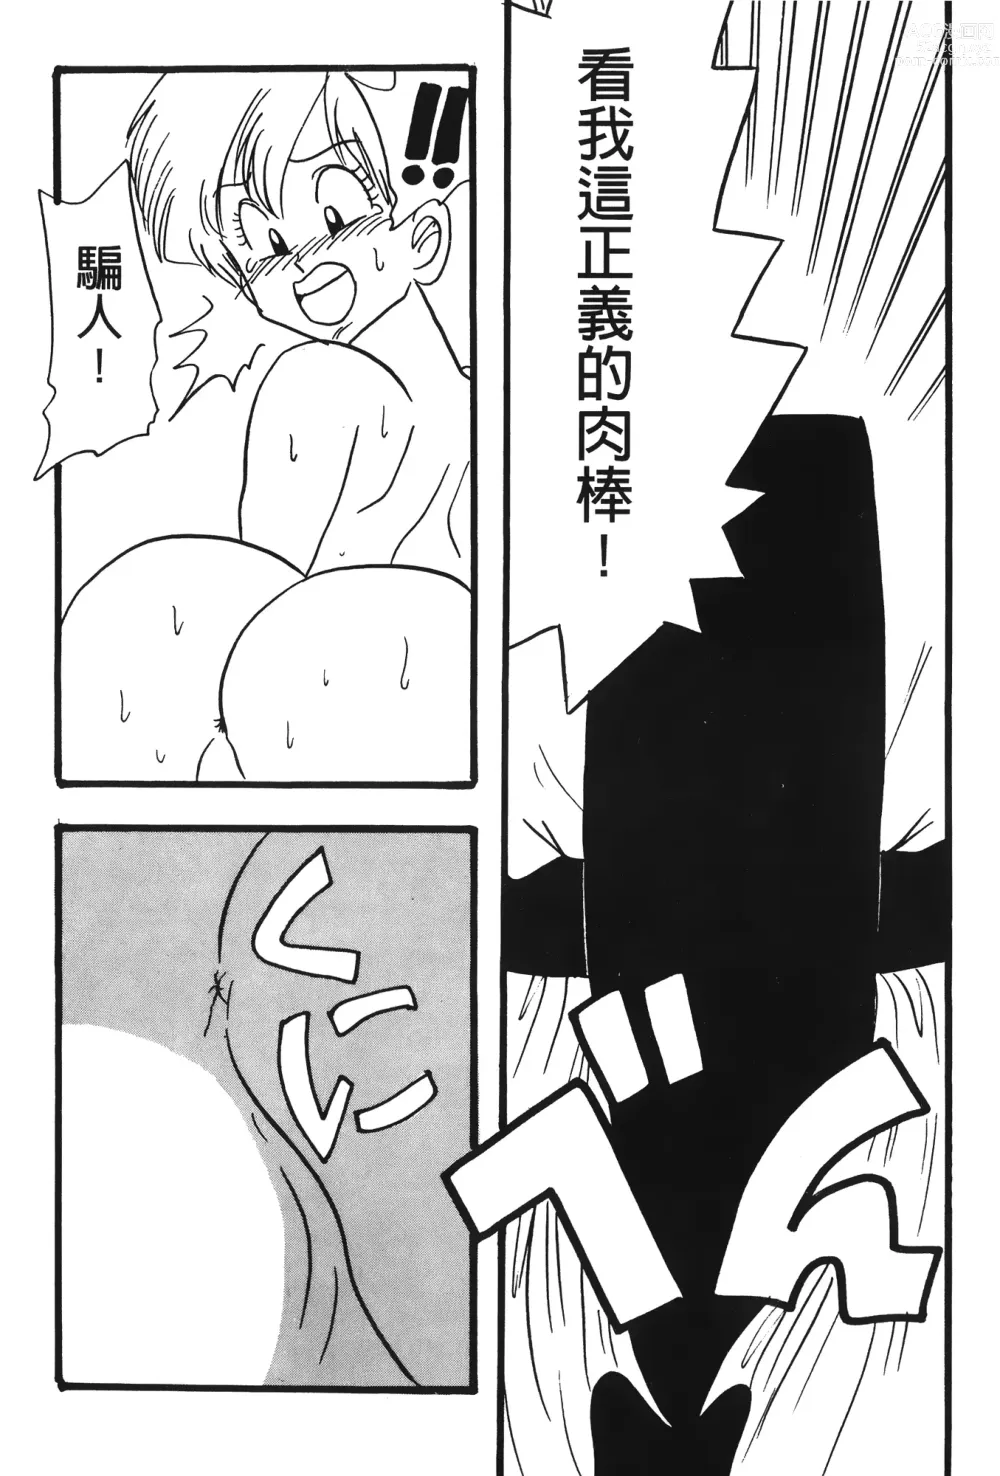 Page 22 of doujinshi ドラゴンパール 02